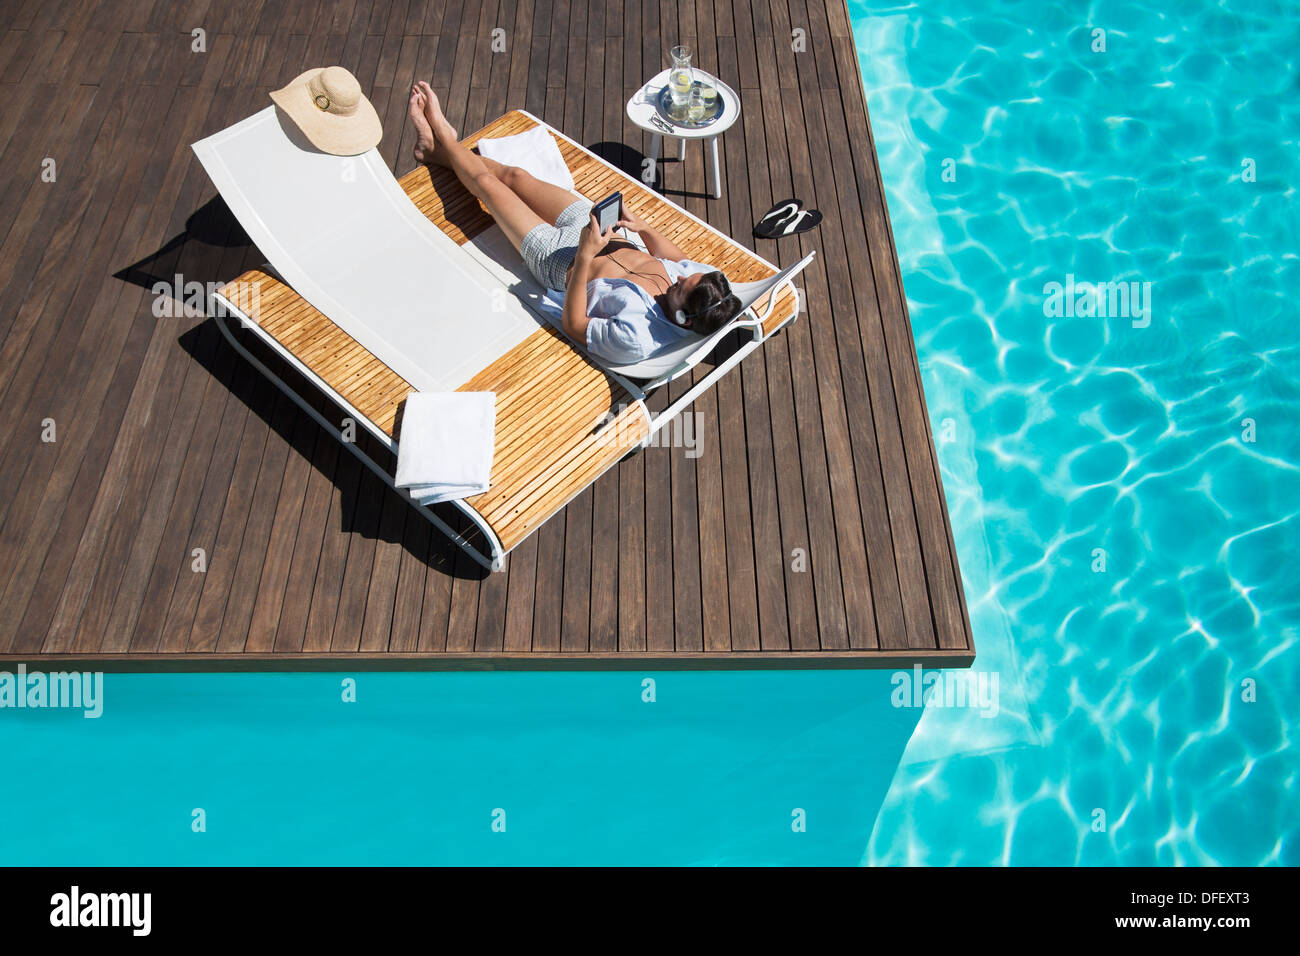 L'uomo rilassante sulla sedia a sdraio a bordo piscina Foto Stock